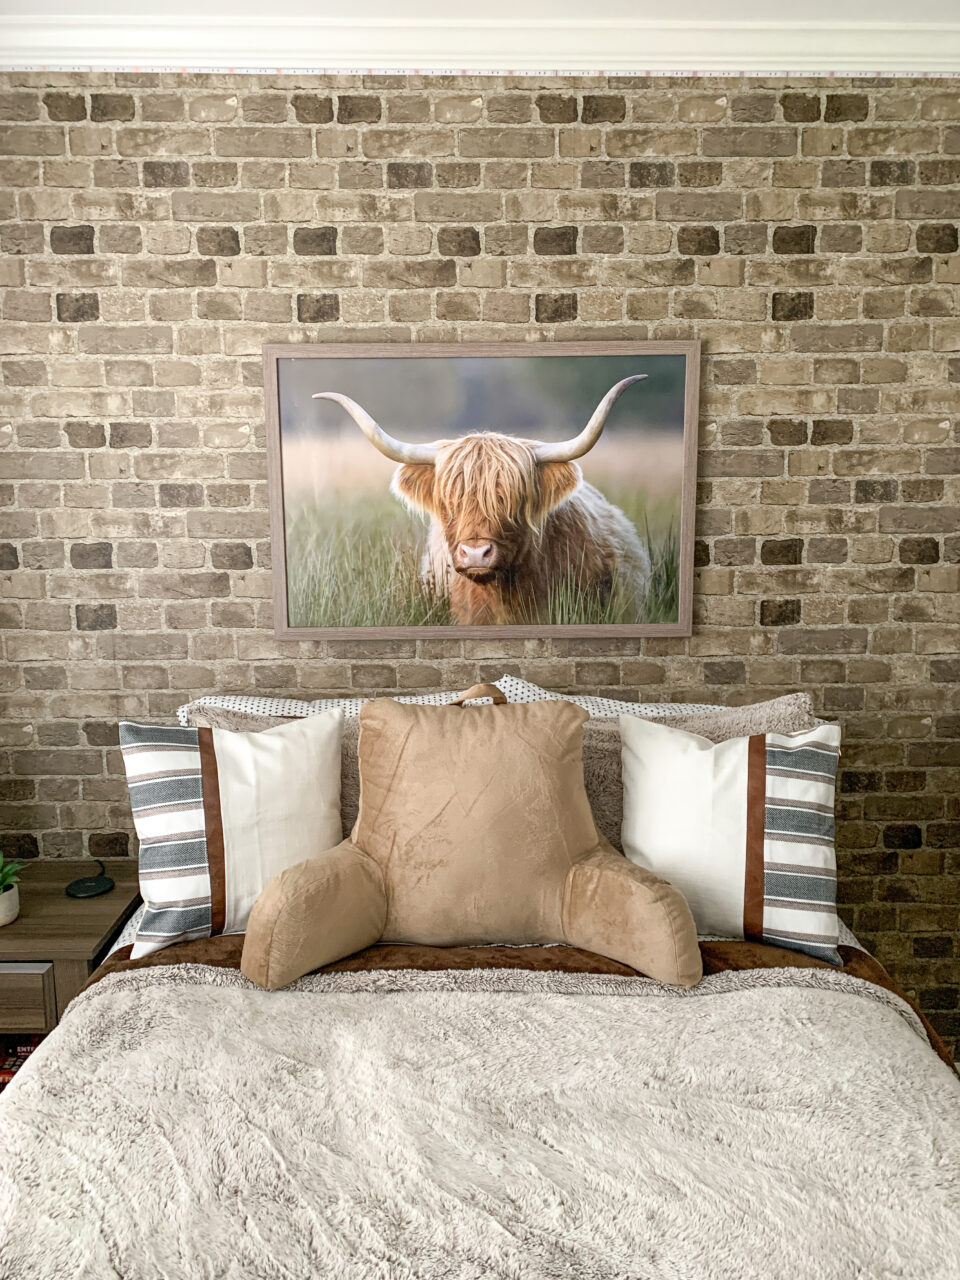 highlander cow framed over a bed